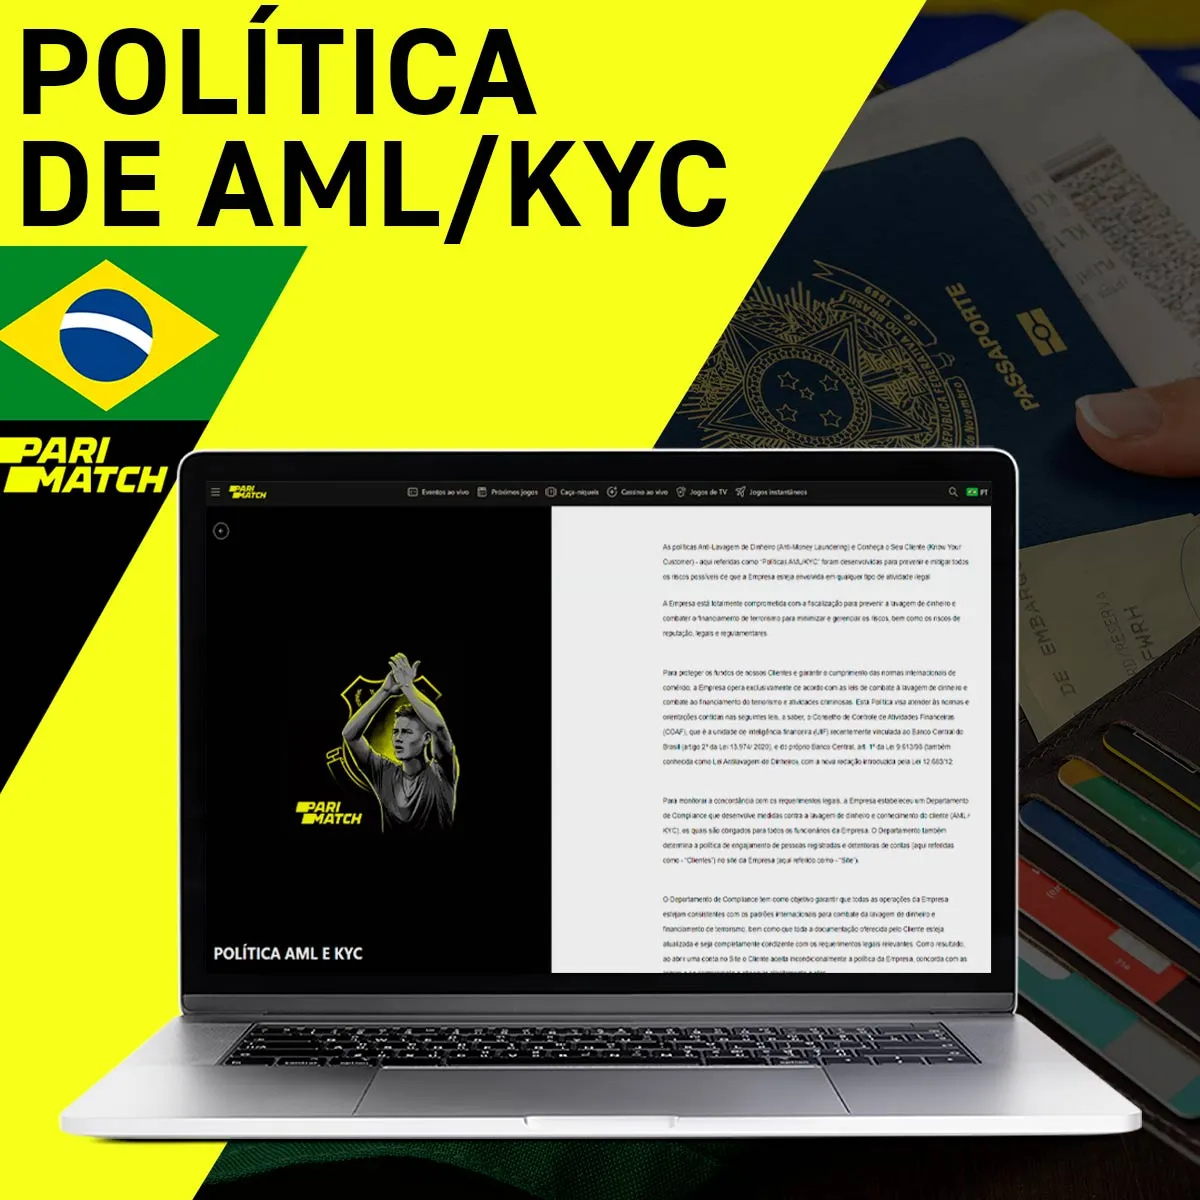 Política de AML/KYC da casa de apostas Parimatch no Brasil